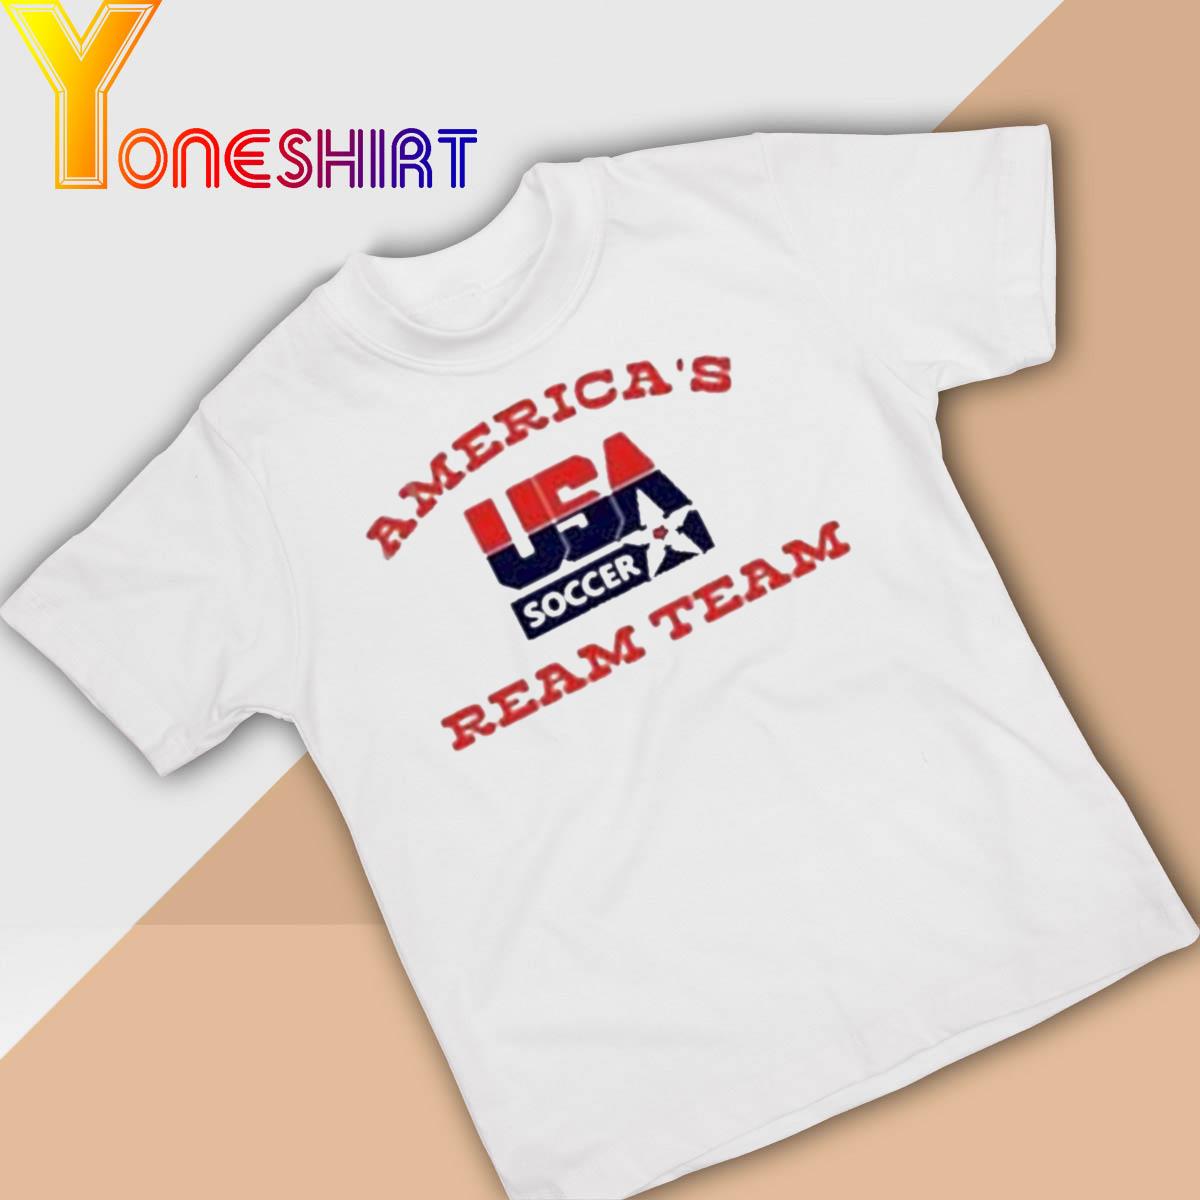 America's USA Soccer Ream Team shirt